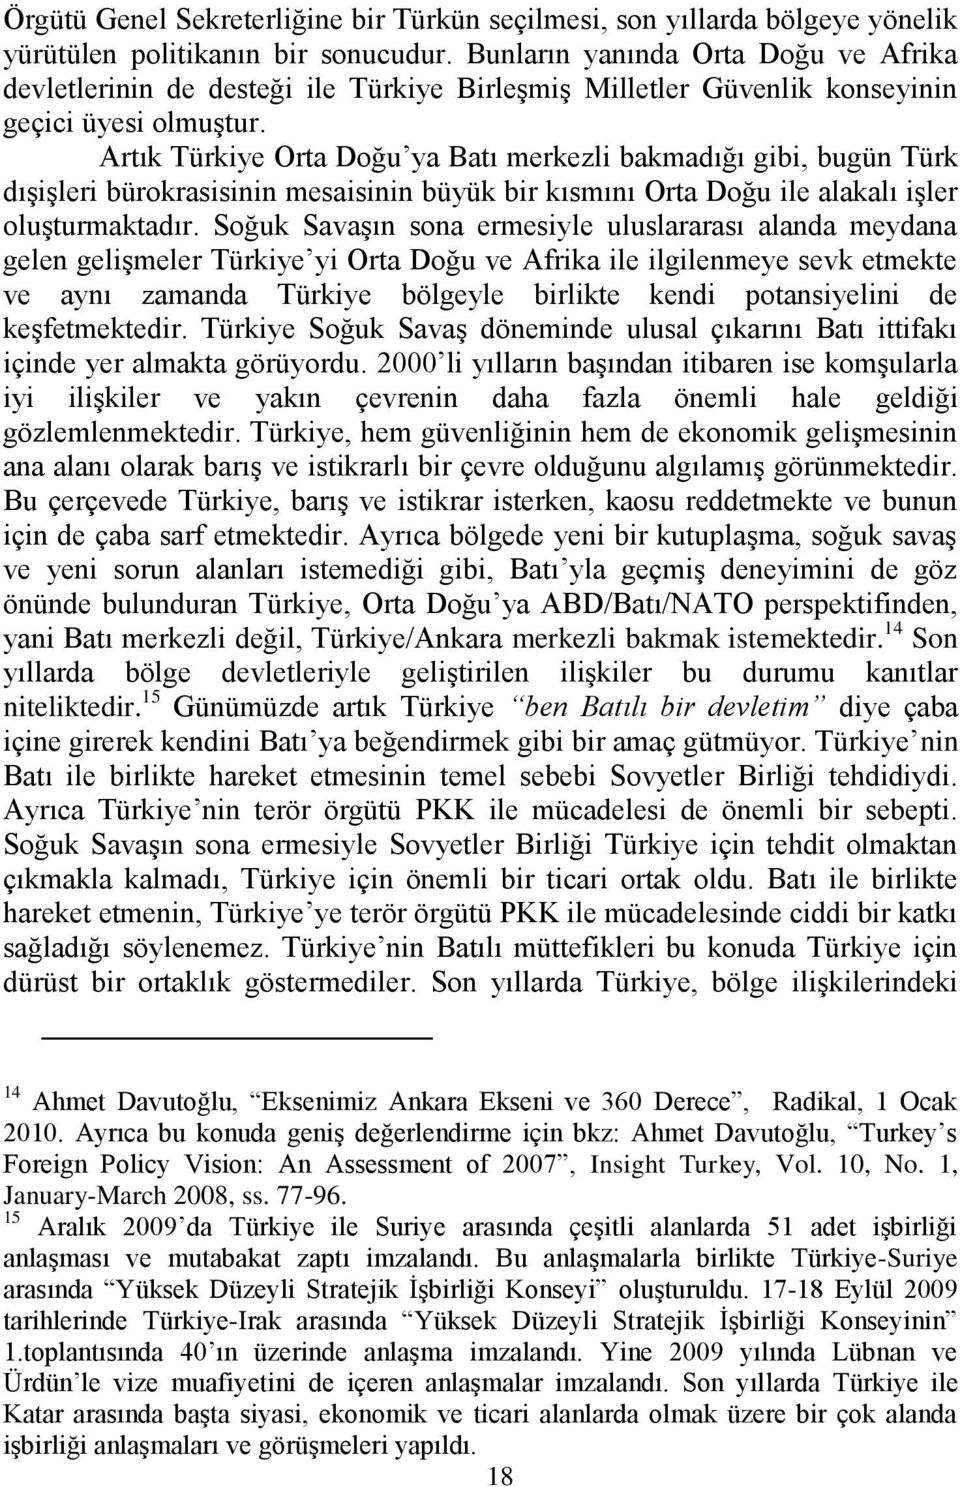 Artık Türkiye Orta Doğu ya Batı merkezli bakmadığı gibi, bugün Türk dıģiģleri bürokrasisinin mesaisinin büyük bir kısmını Orta Doğu ile alakalı iģler oluģturmaktadır.